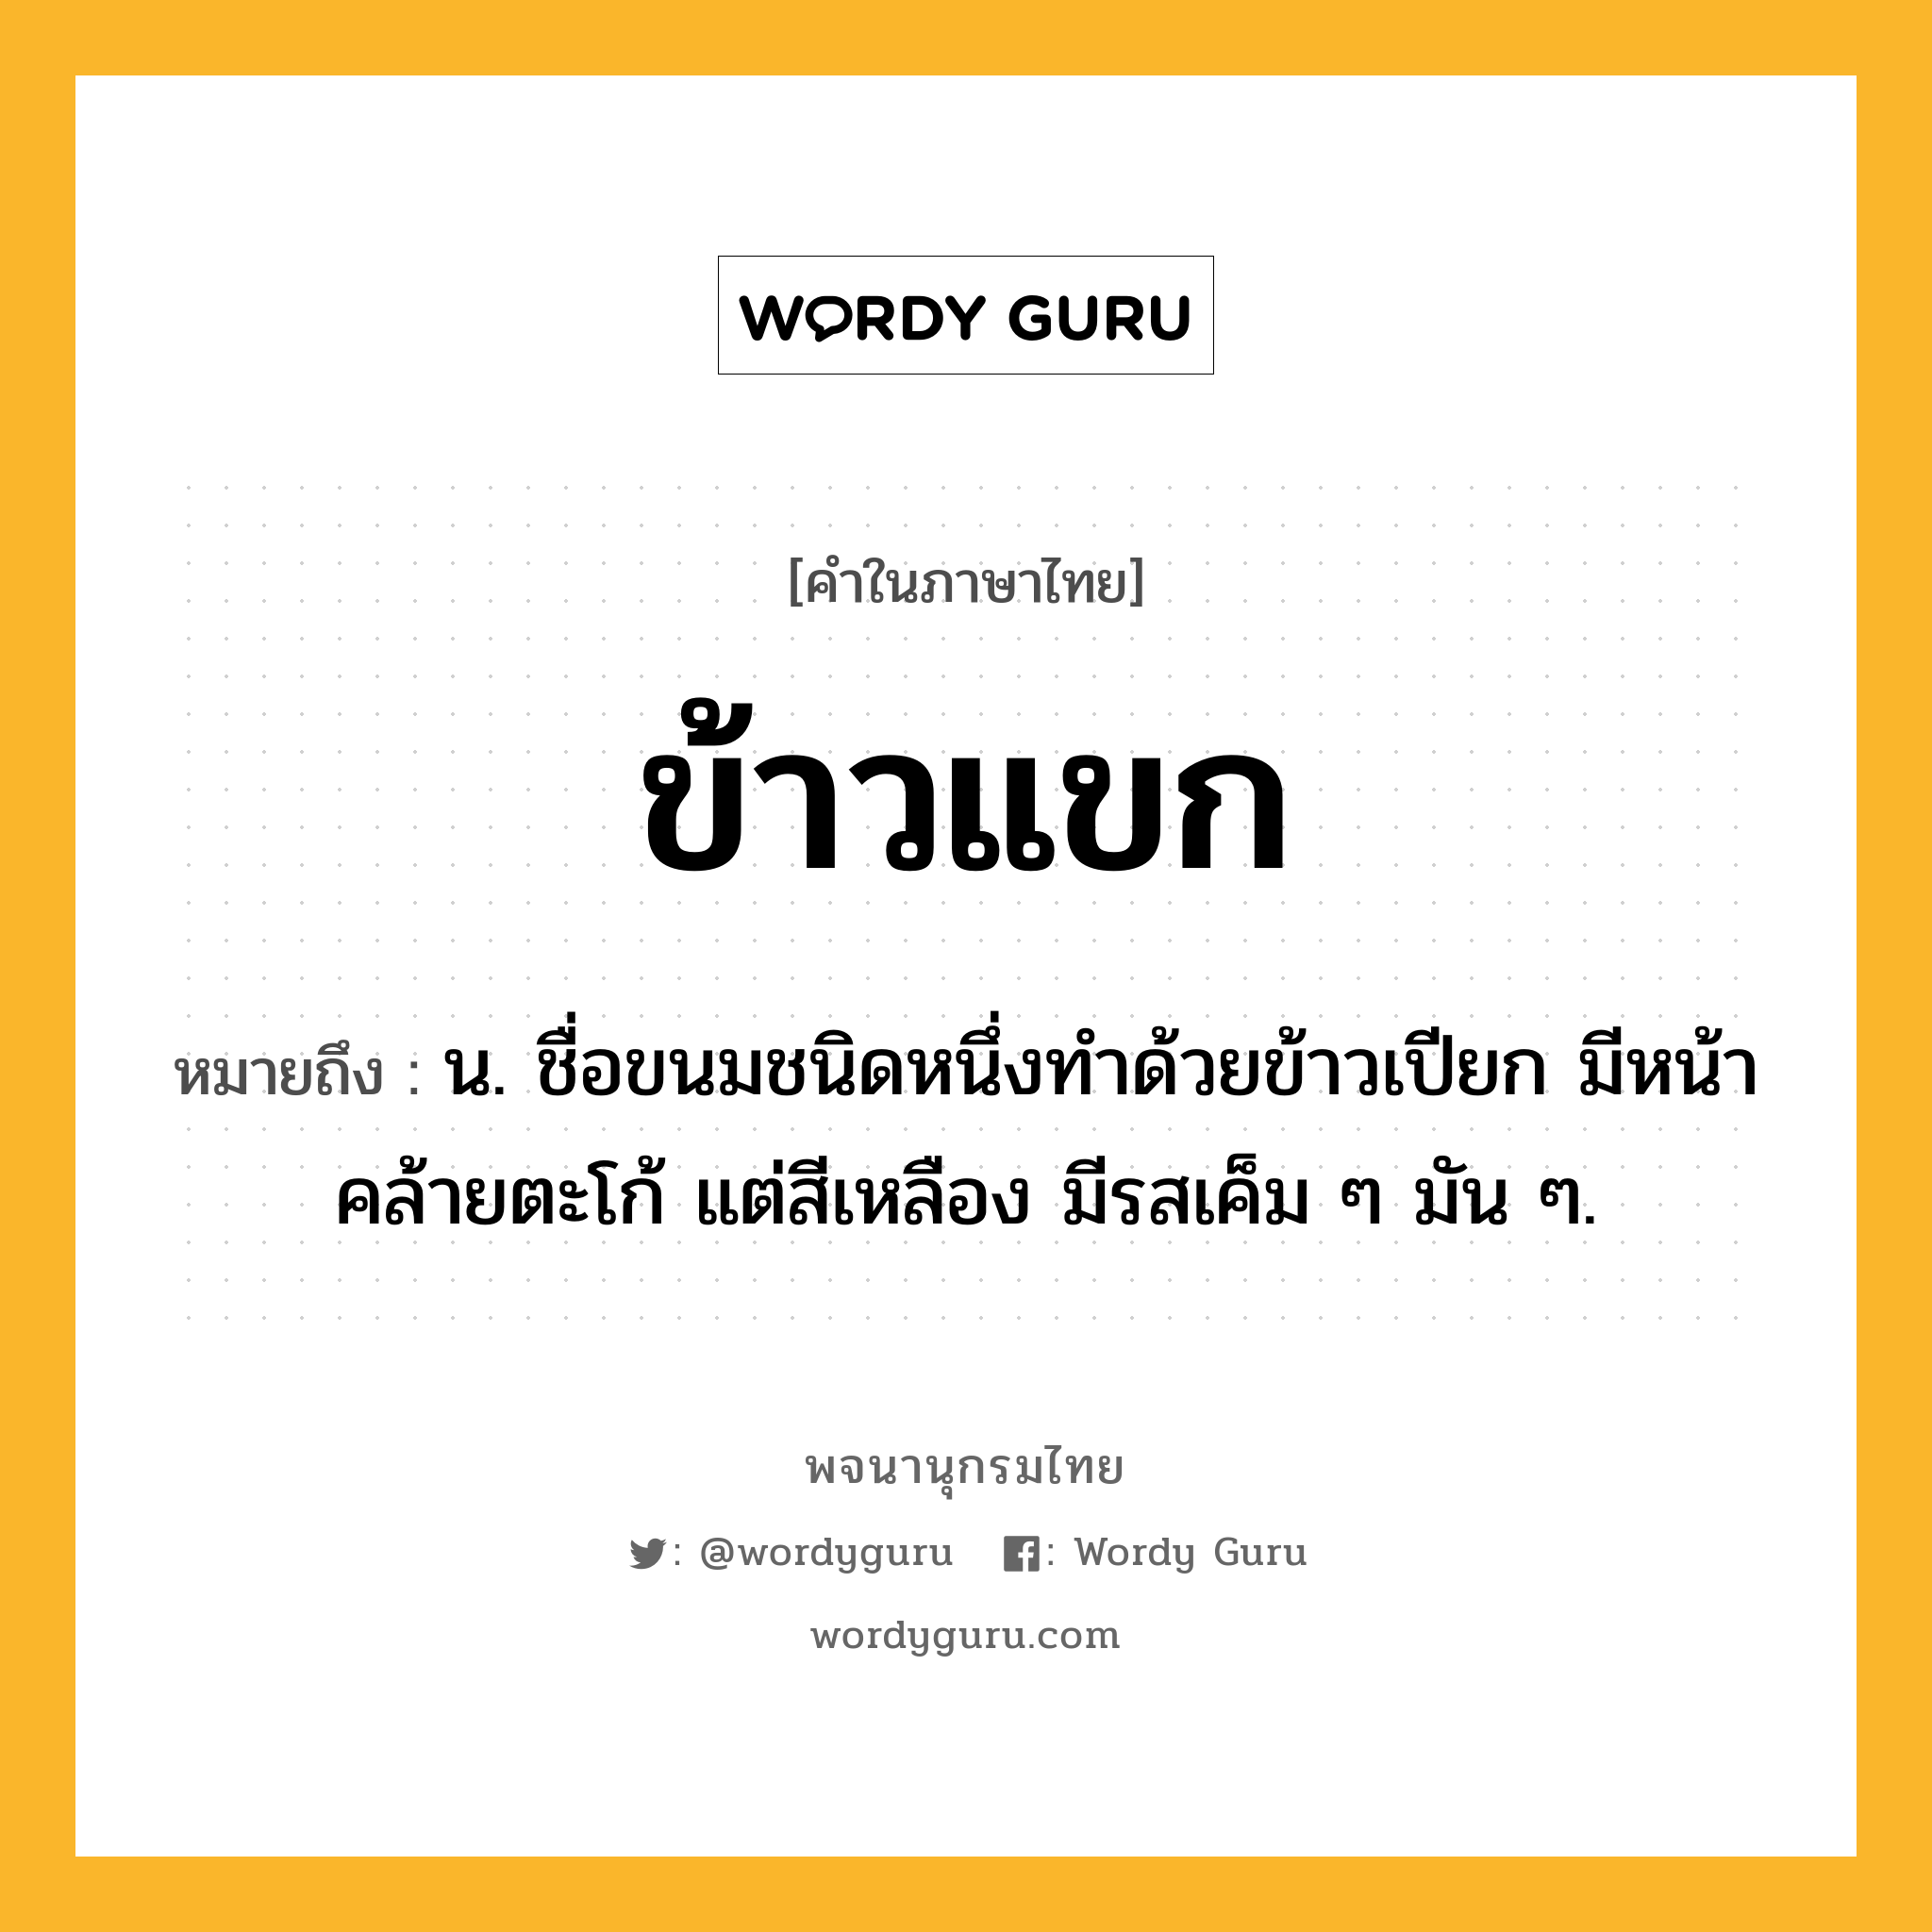 ข้าวแขก ความหมาย หมายถึงอะไร?, คำในภาษาไทย ข้าวแขก หมายถึง น. ชื่อขนมชนิดหนึ่งทําด้วยข้าวเปียก มีหน้าคล้ายตะโก้ แต่สีเหลือง มีรสเค็ม ๆ มัน ๆ.